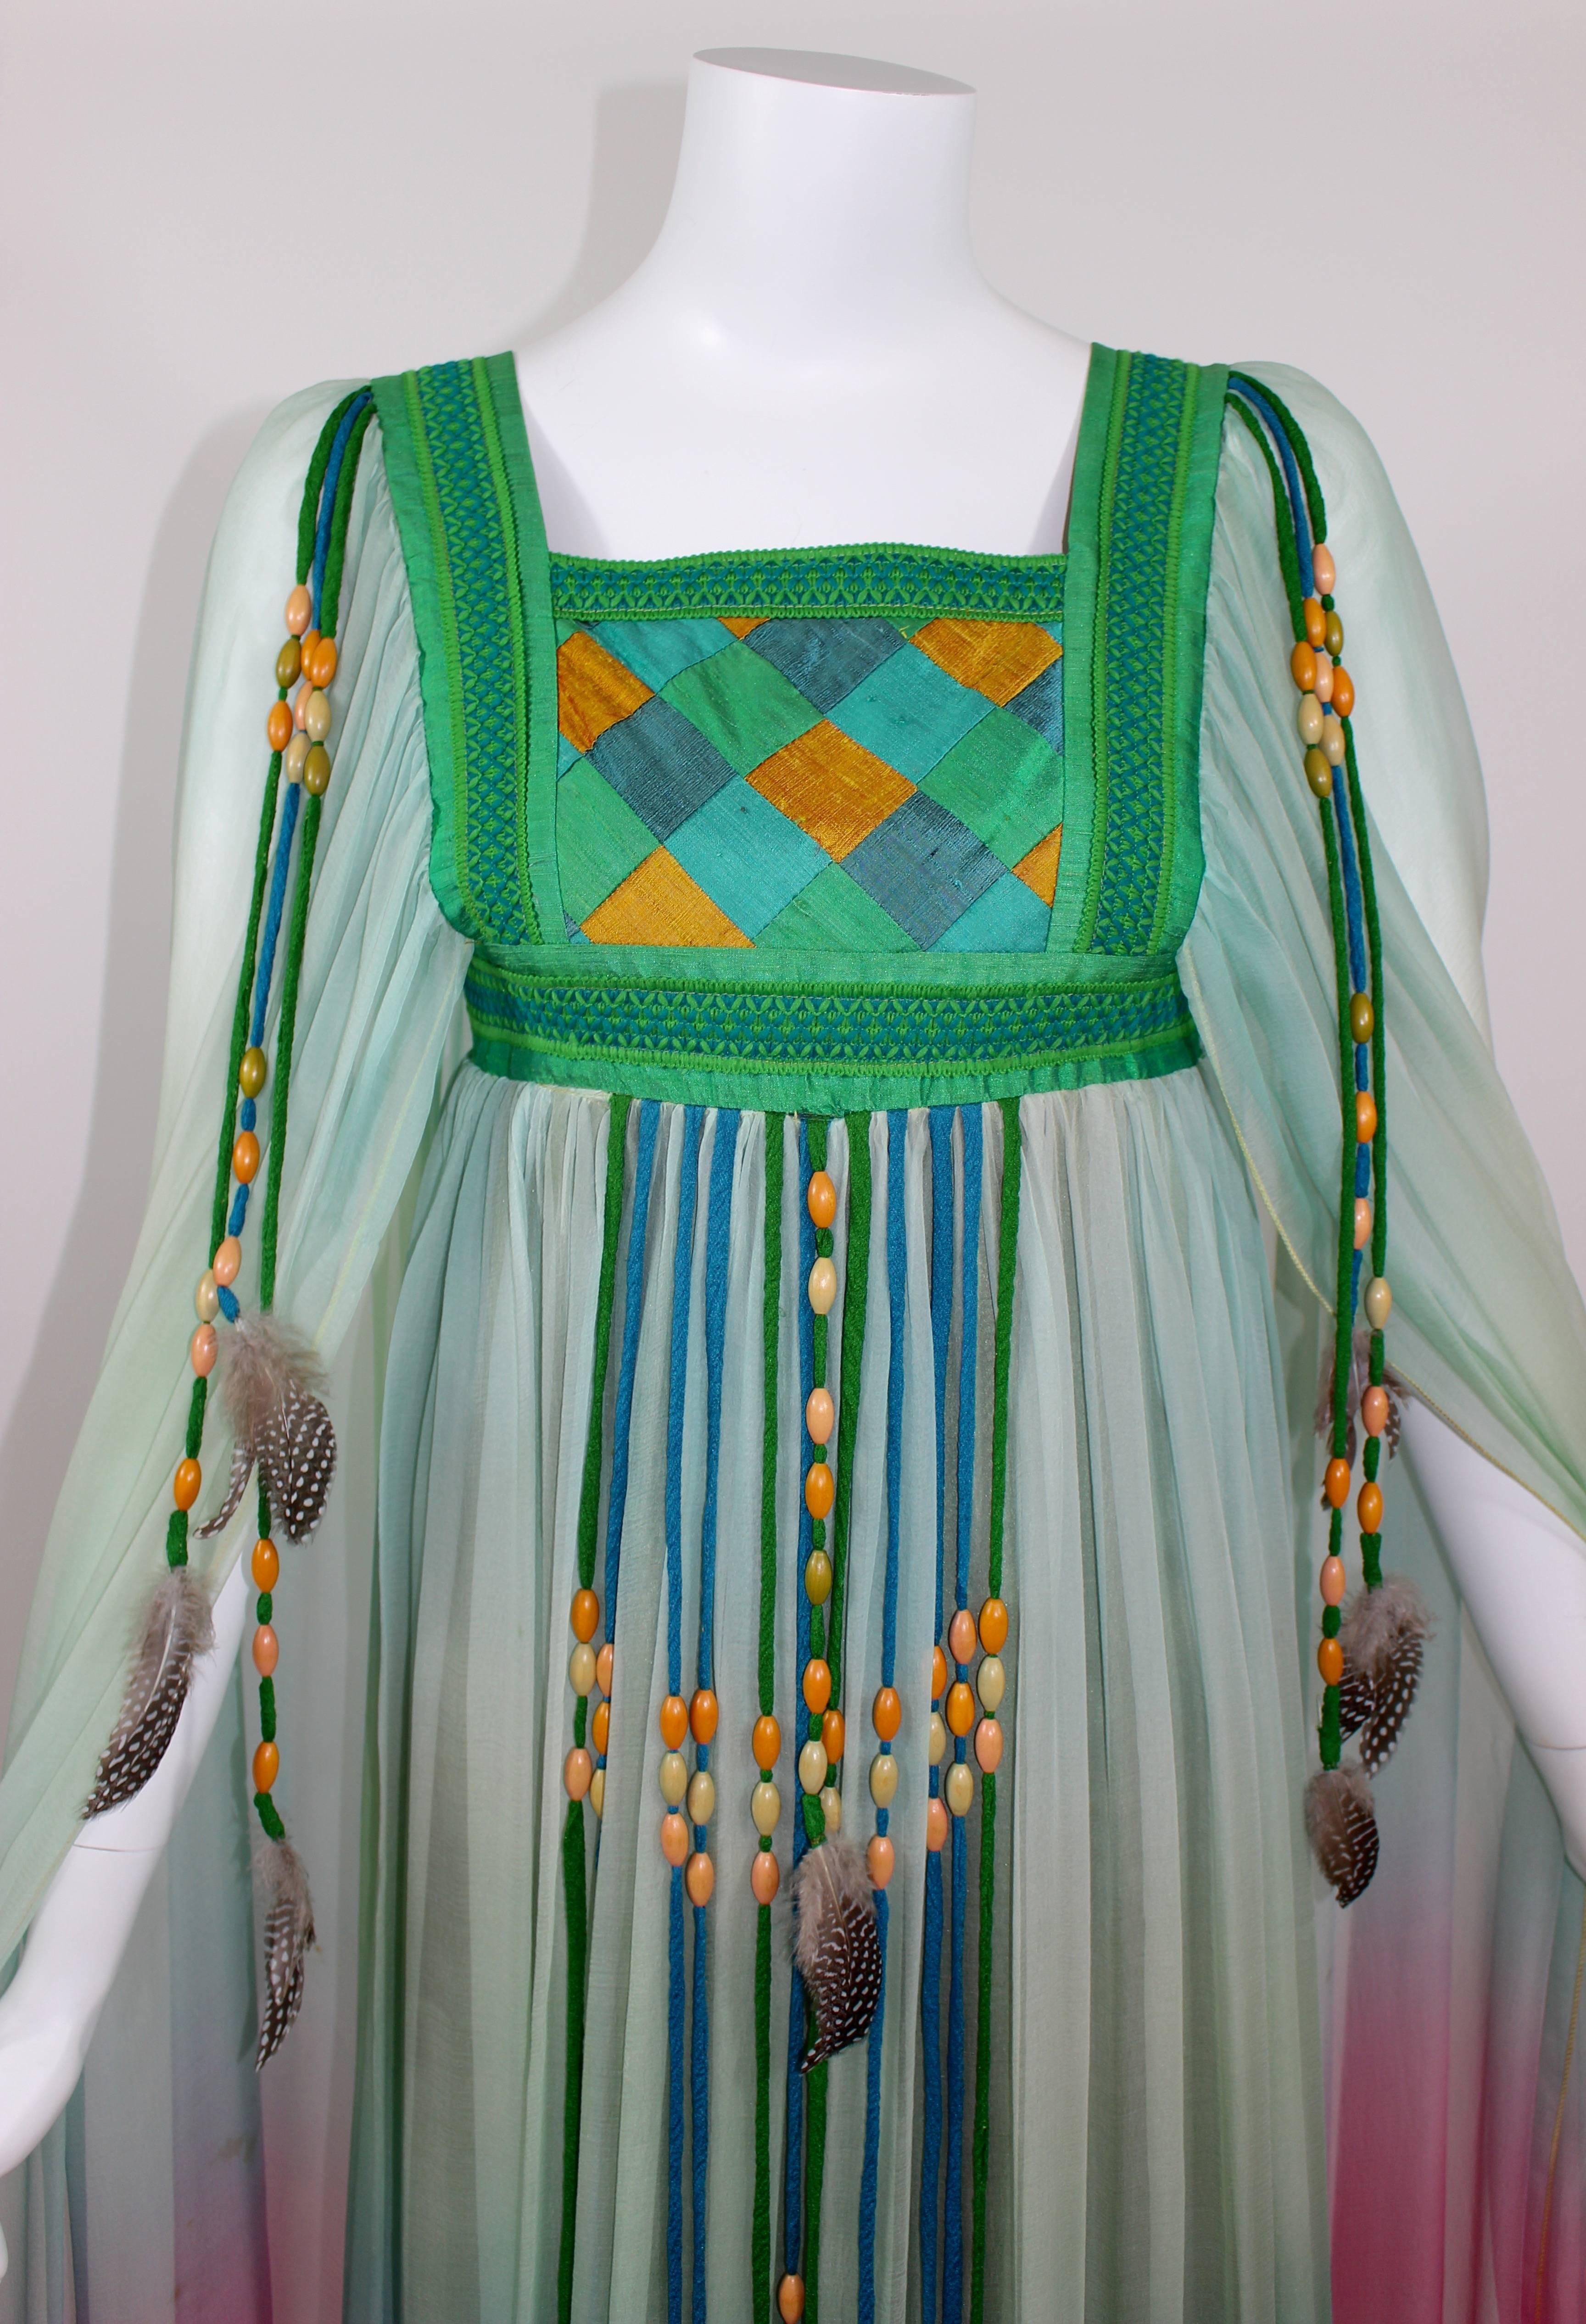 Robe de mariée en mousseline de soie dégradée Gina Fratini Elizabeth Taylor documentée 1975 2